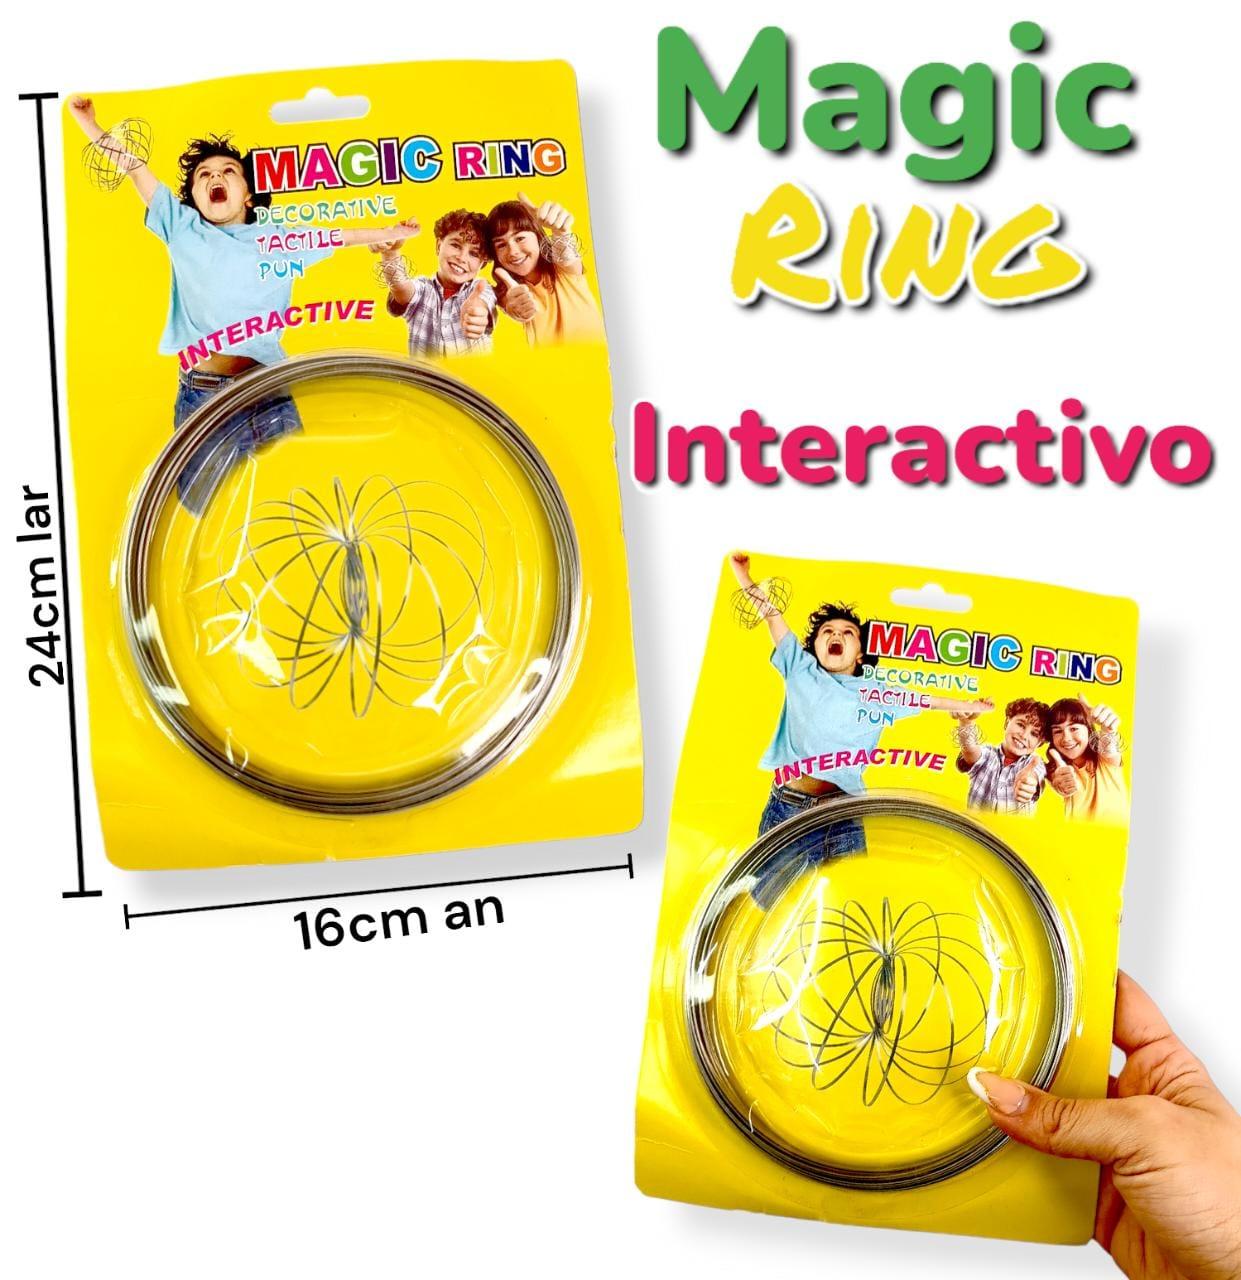 Magic Ring Interactivo